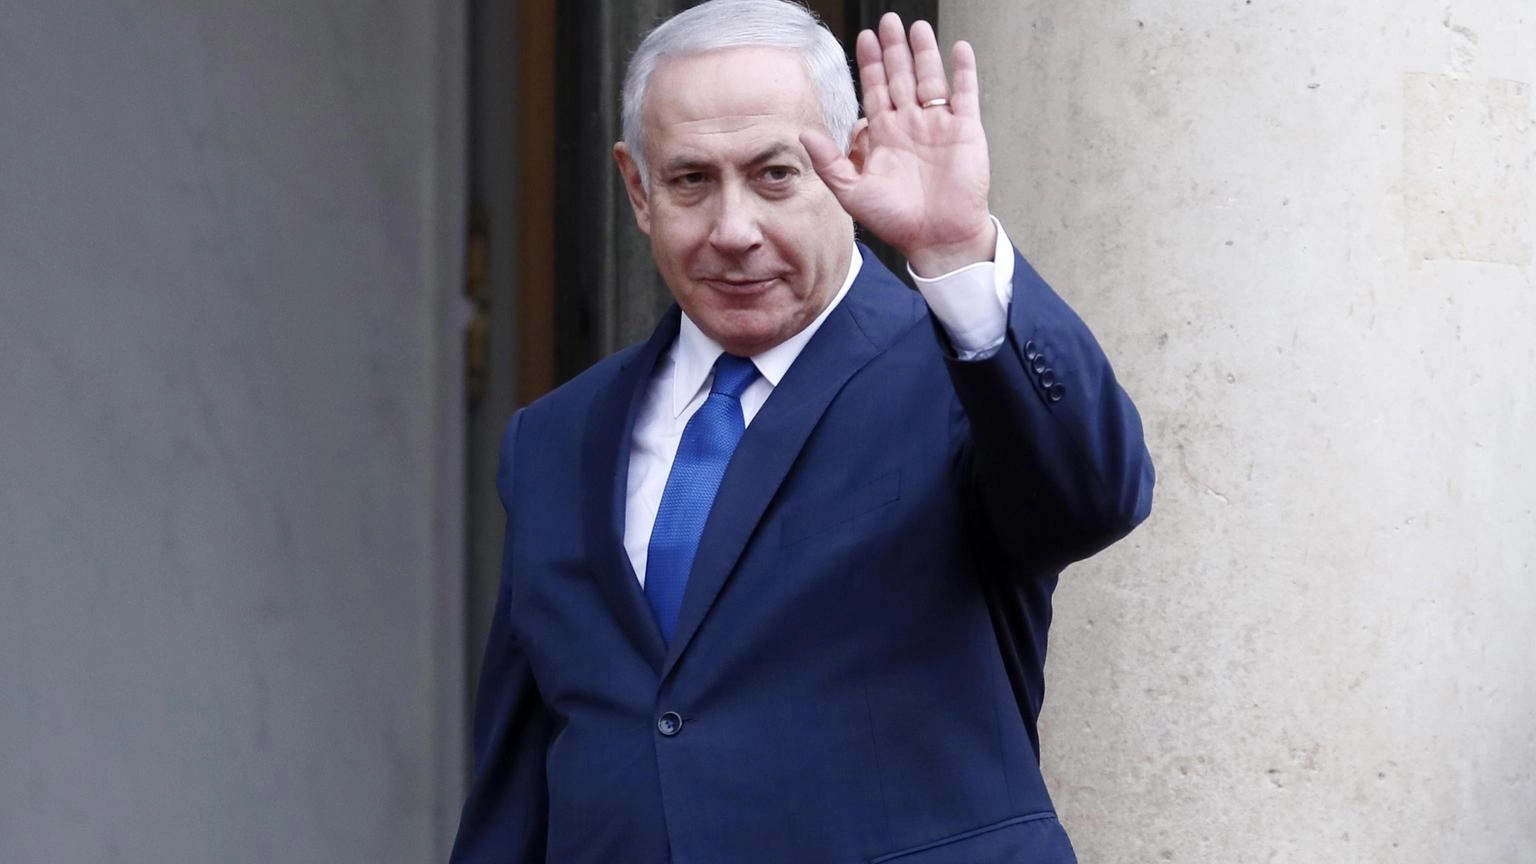 Maggioranza dà mandato a Netanyahu per un governo d'unità